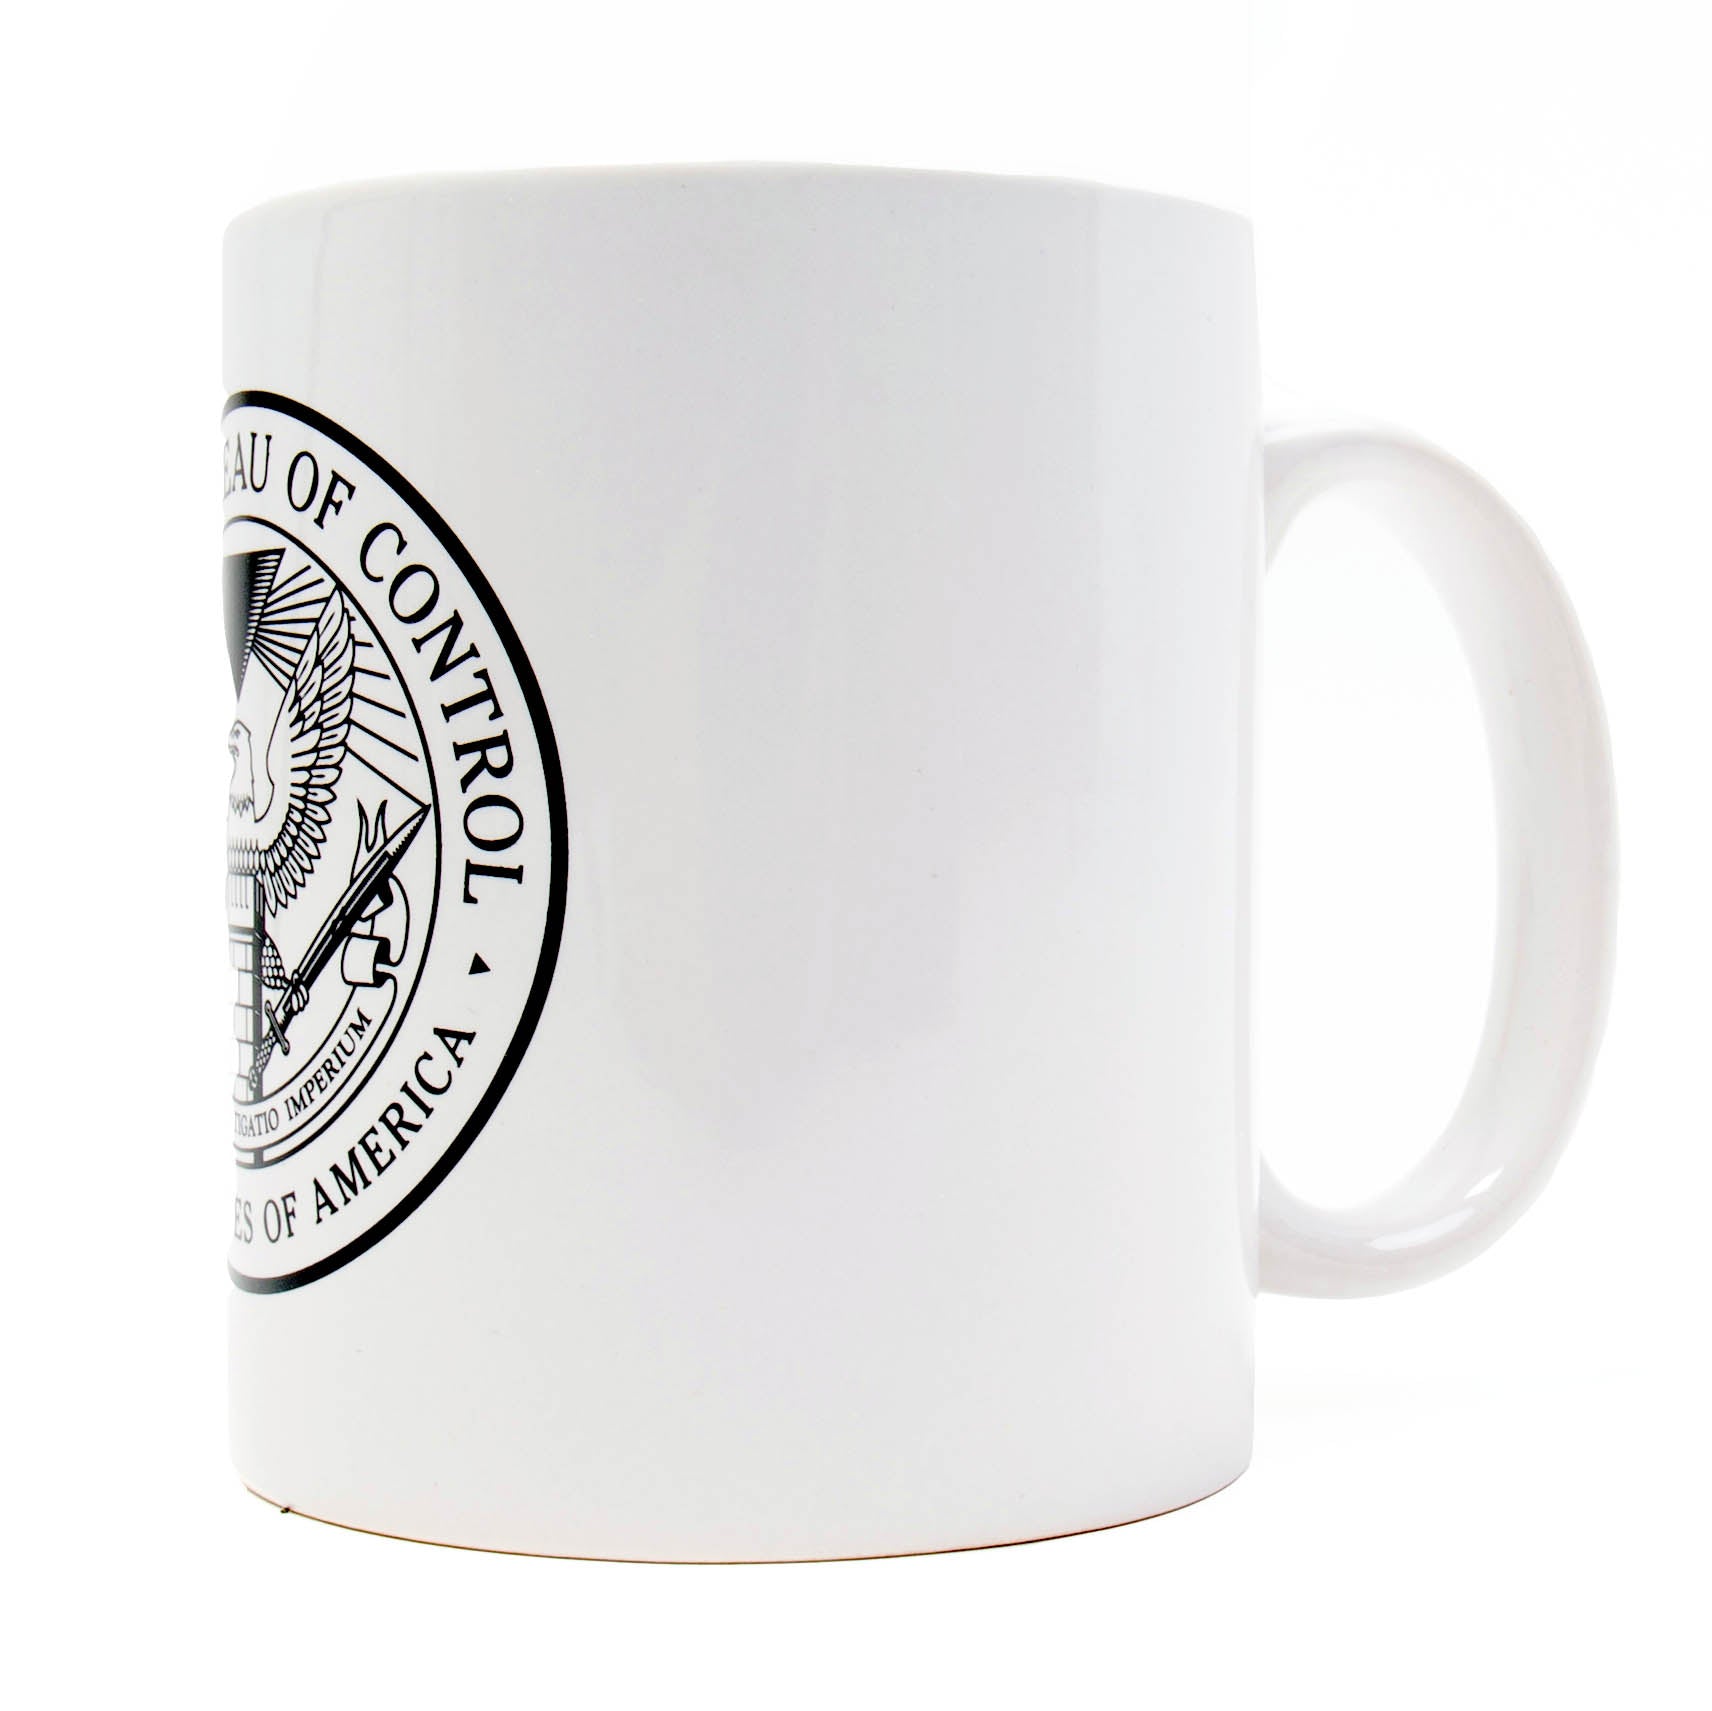 Federal Bureau of Control mug